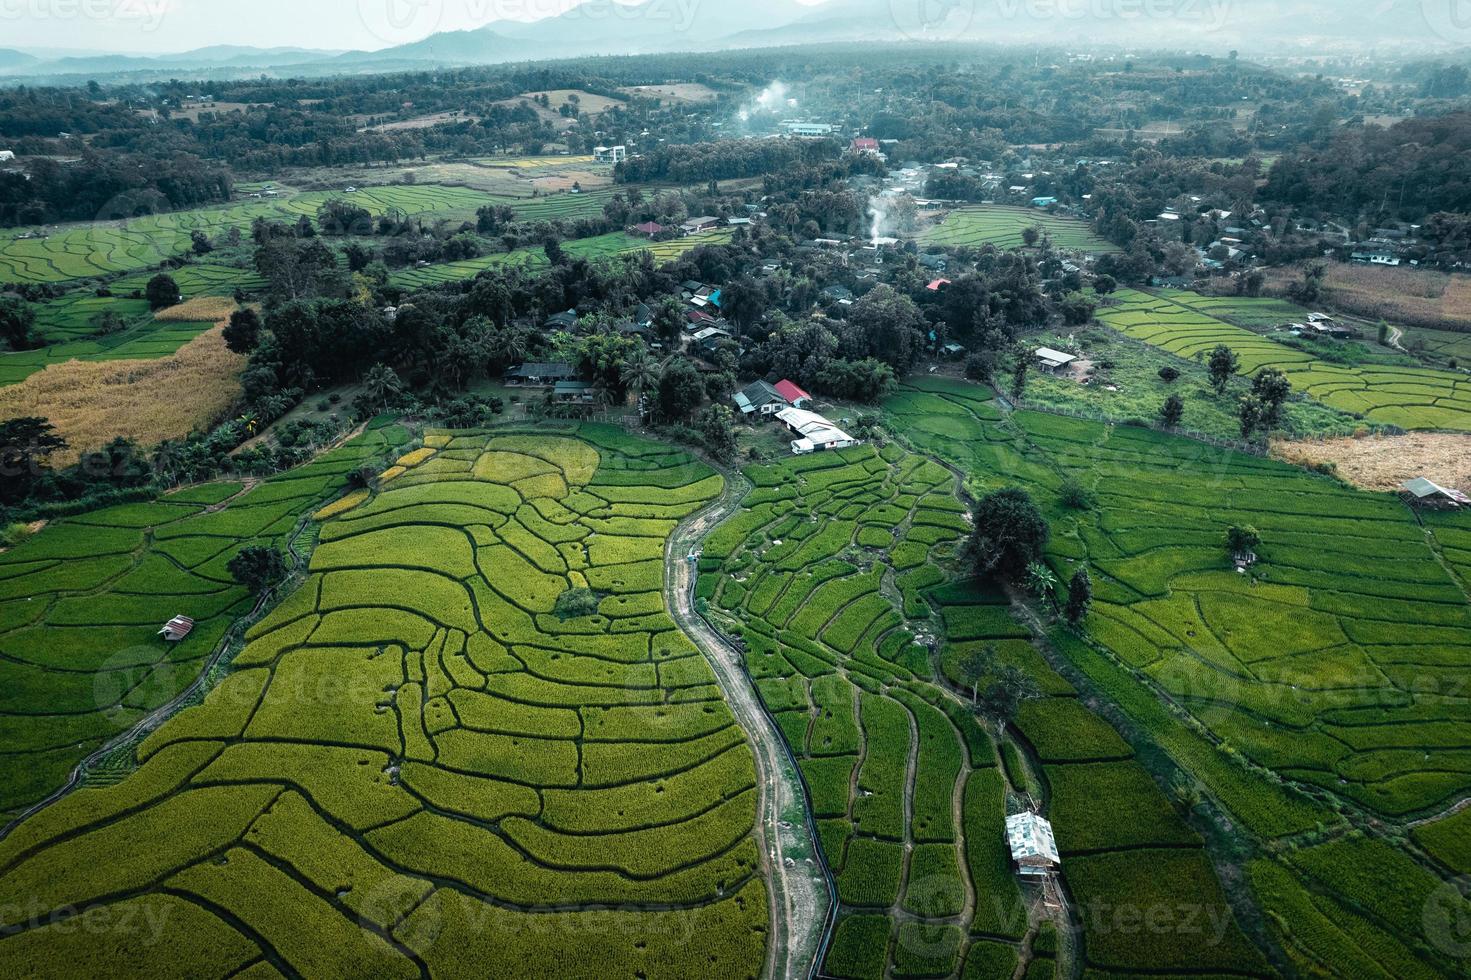 grüne Reisfelder und Landwirtschaft aus der Vogelperspektive foto